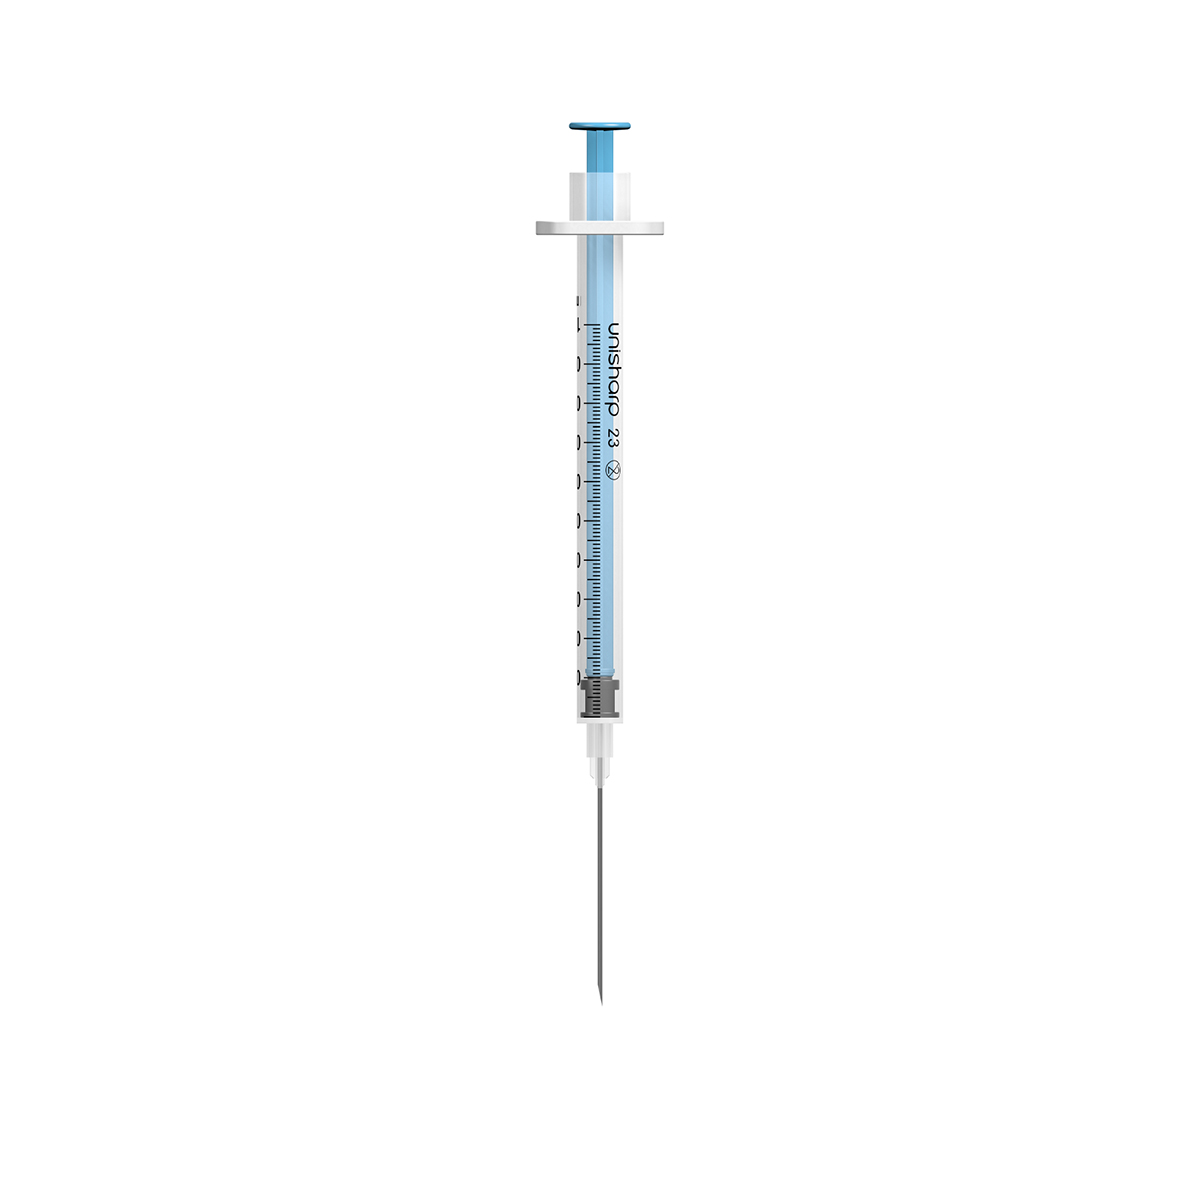 Unisharp 1ml 23G 32mm (1¼ inch) blue fixed needle syringe